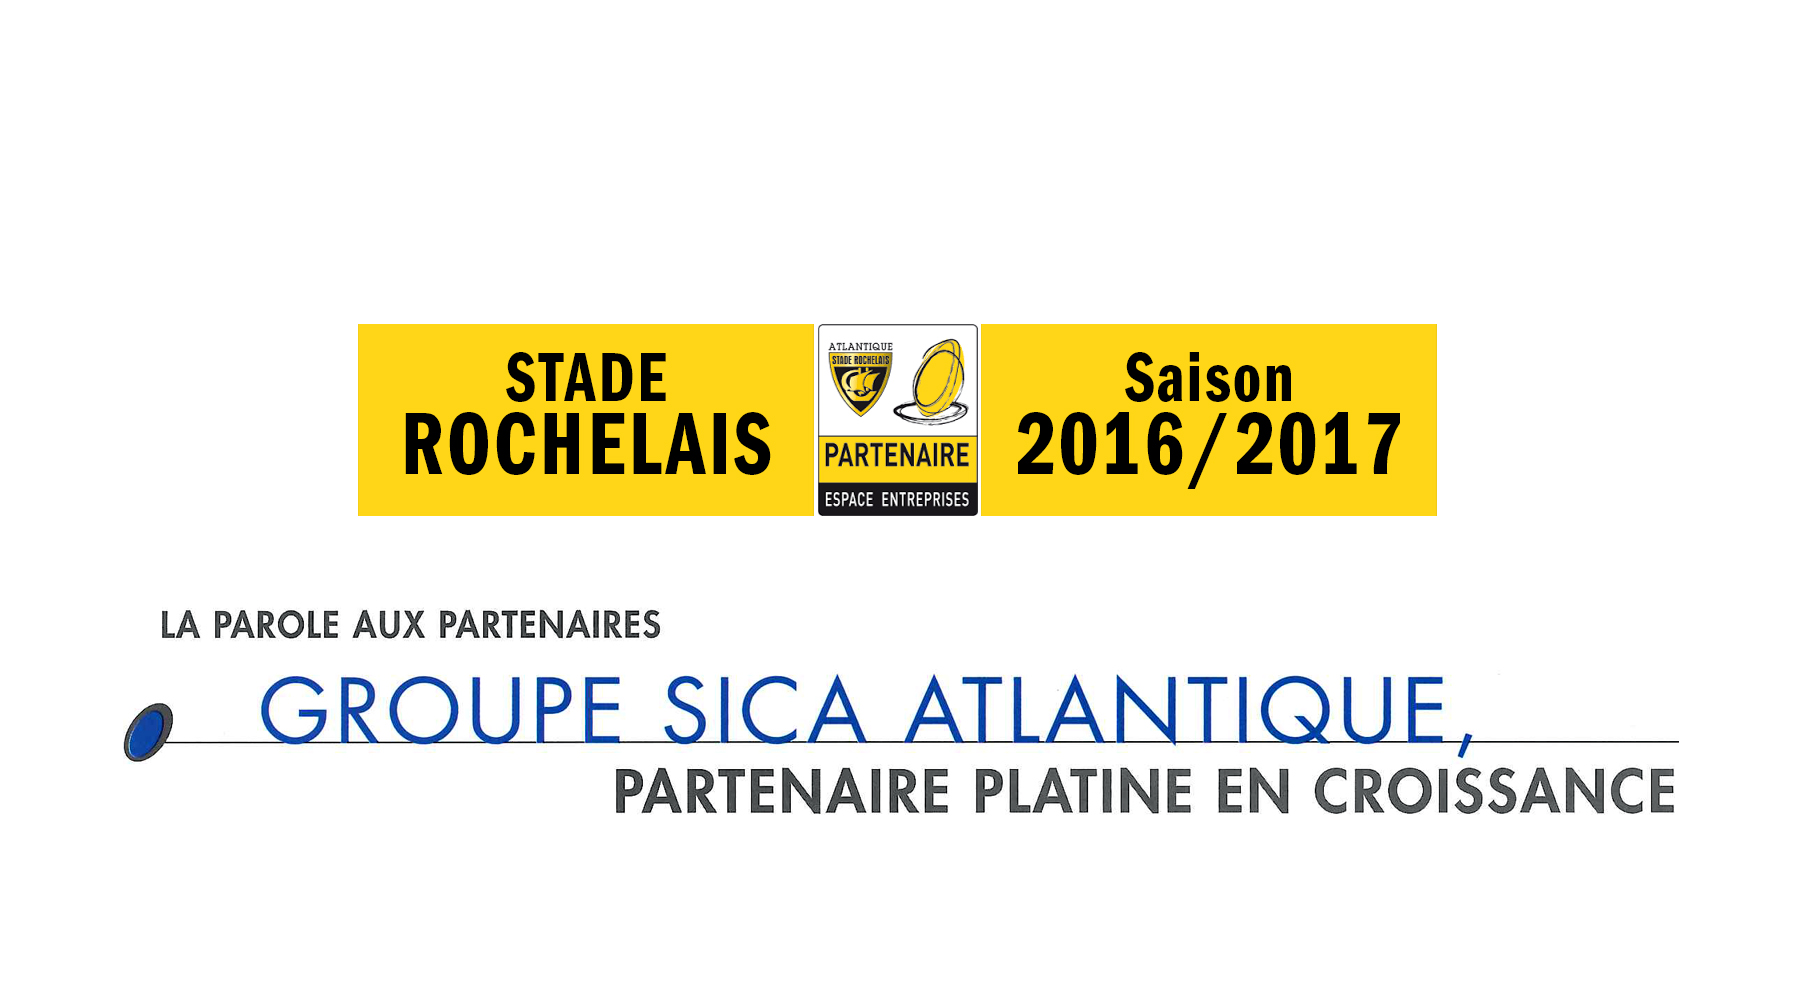 Groupe Sica Atlantique, partenaire platine du Stade Rochelais